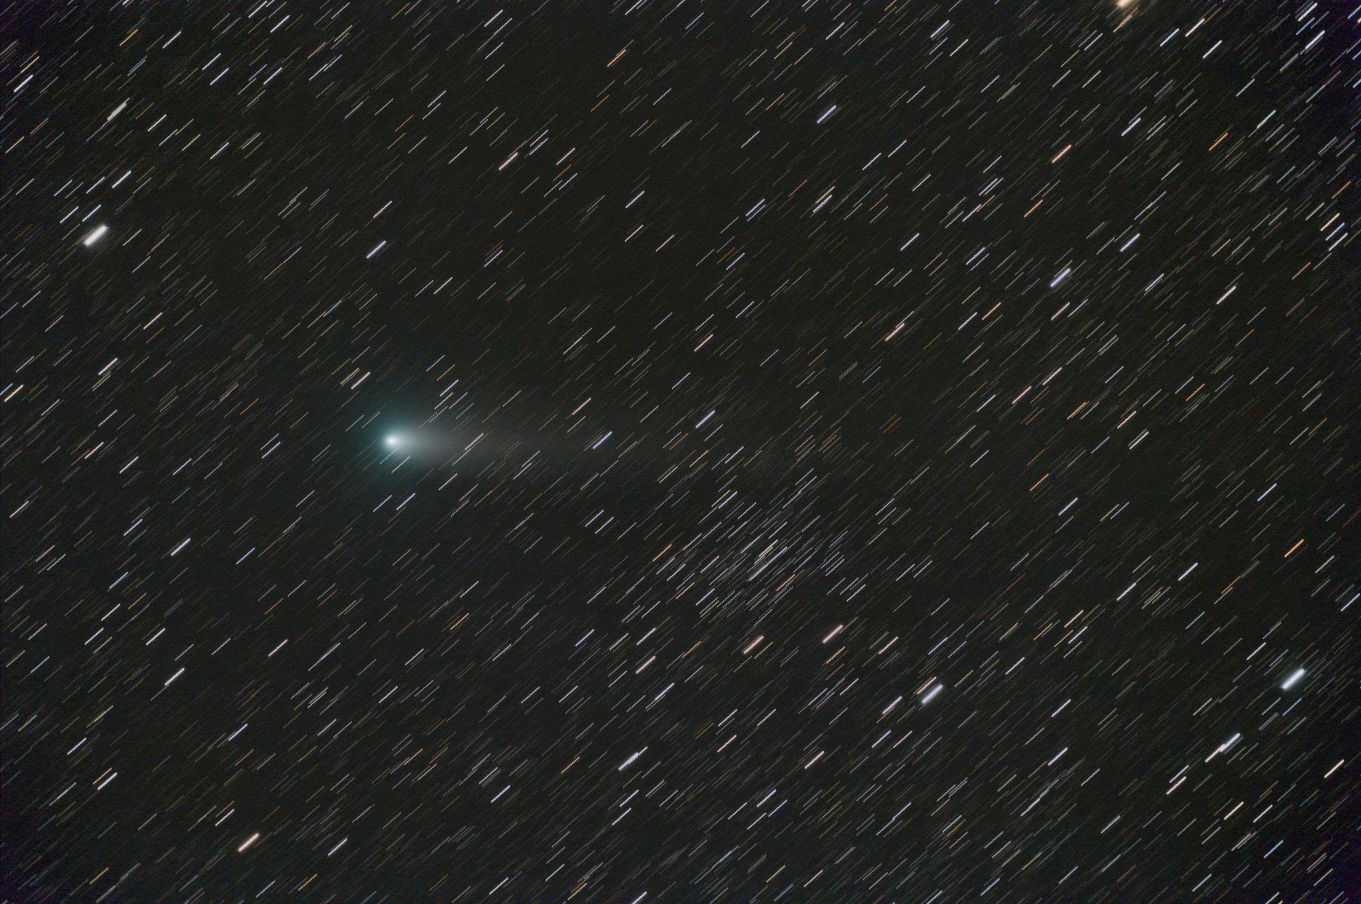 Periodic Comet 21P/Giacobini-Zinner